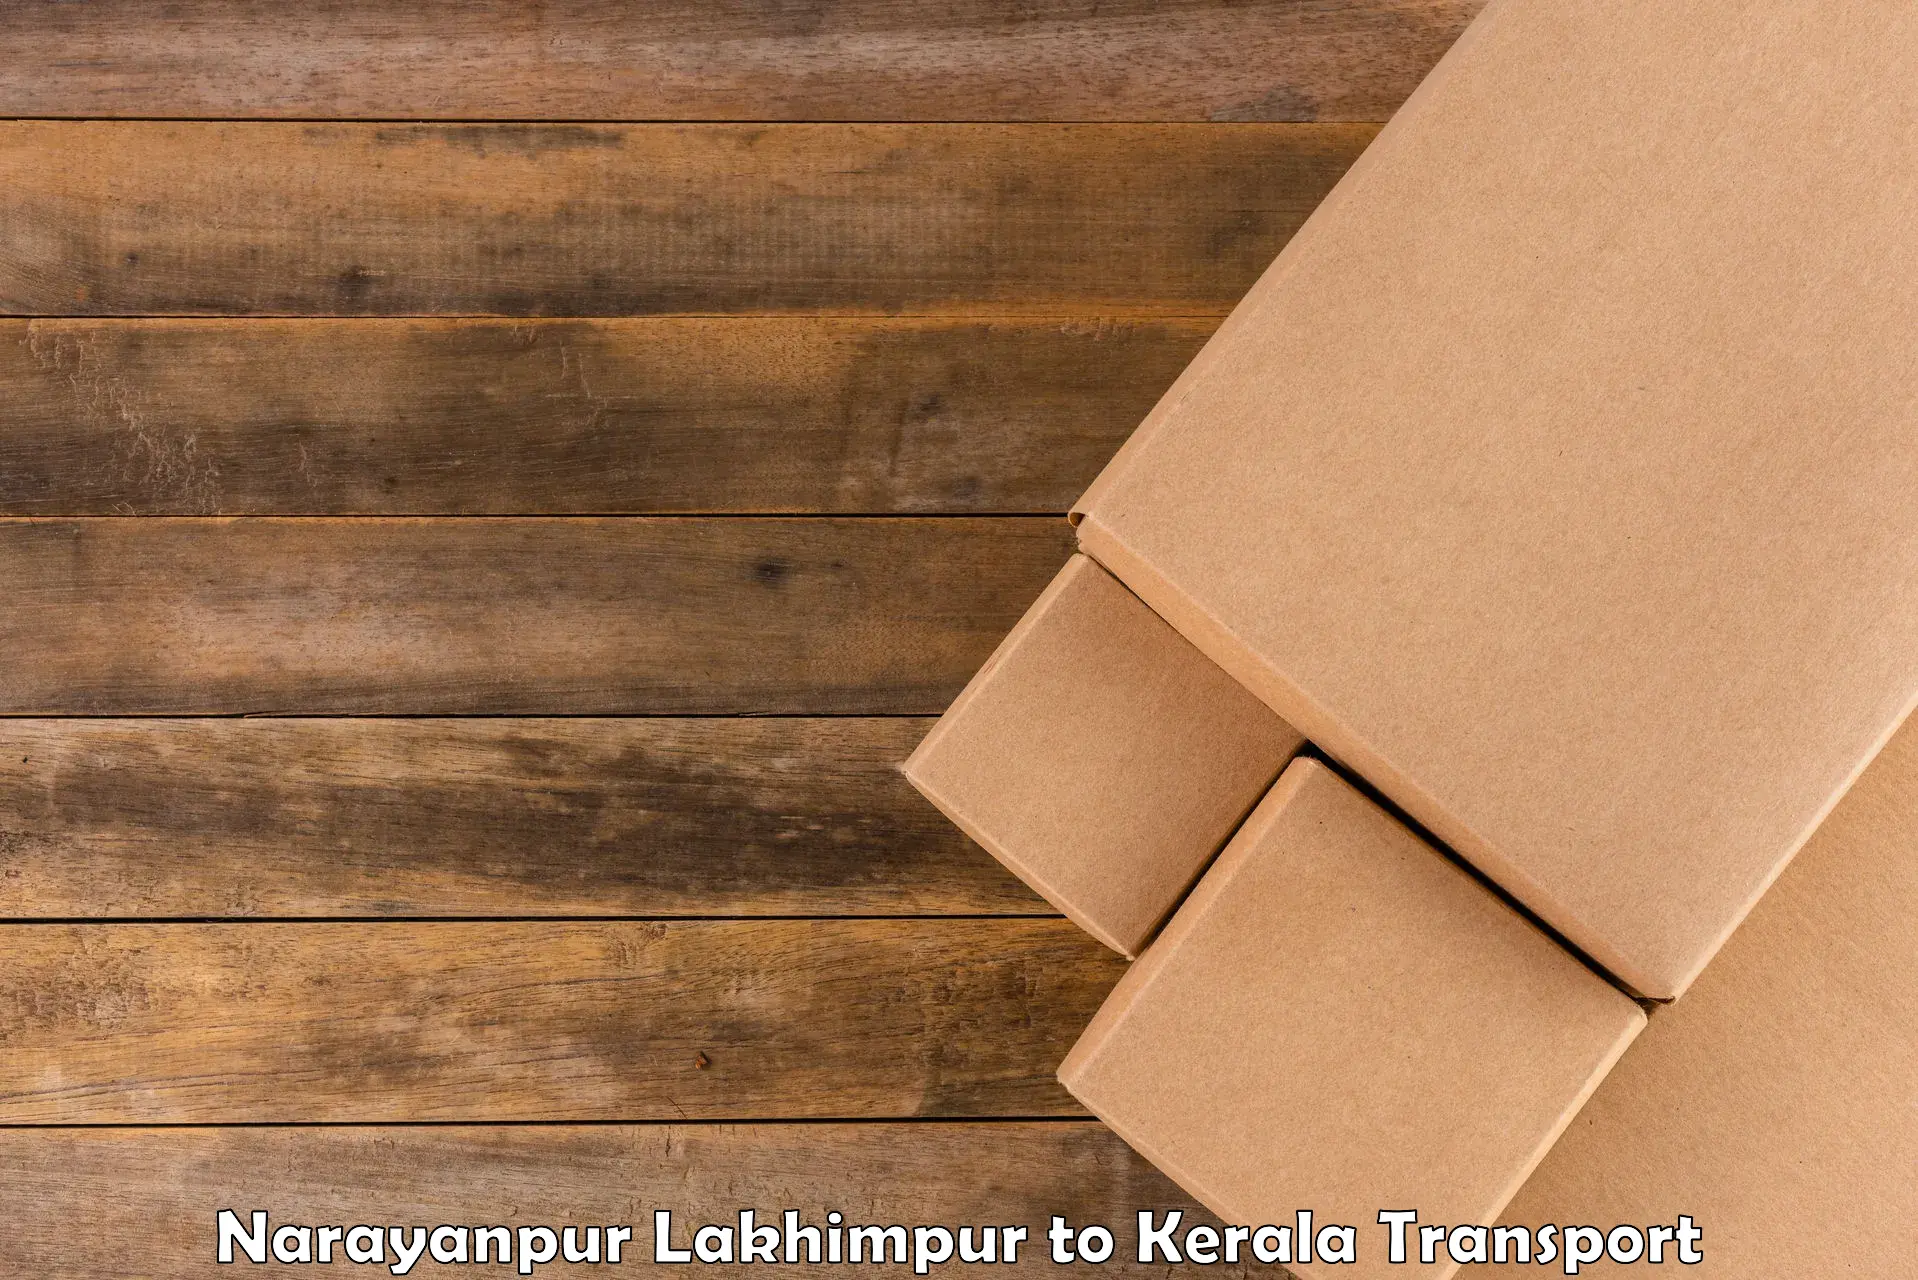 Daily transport service Narayanpur Lakhimpur to Panthalam